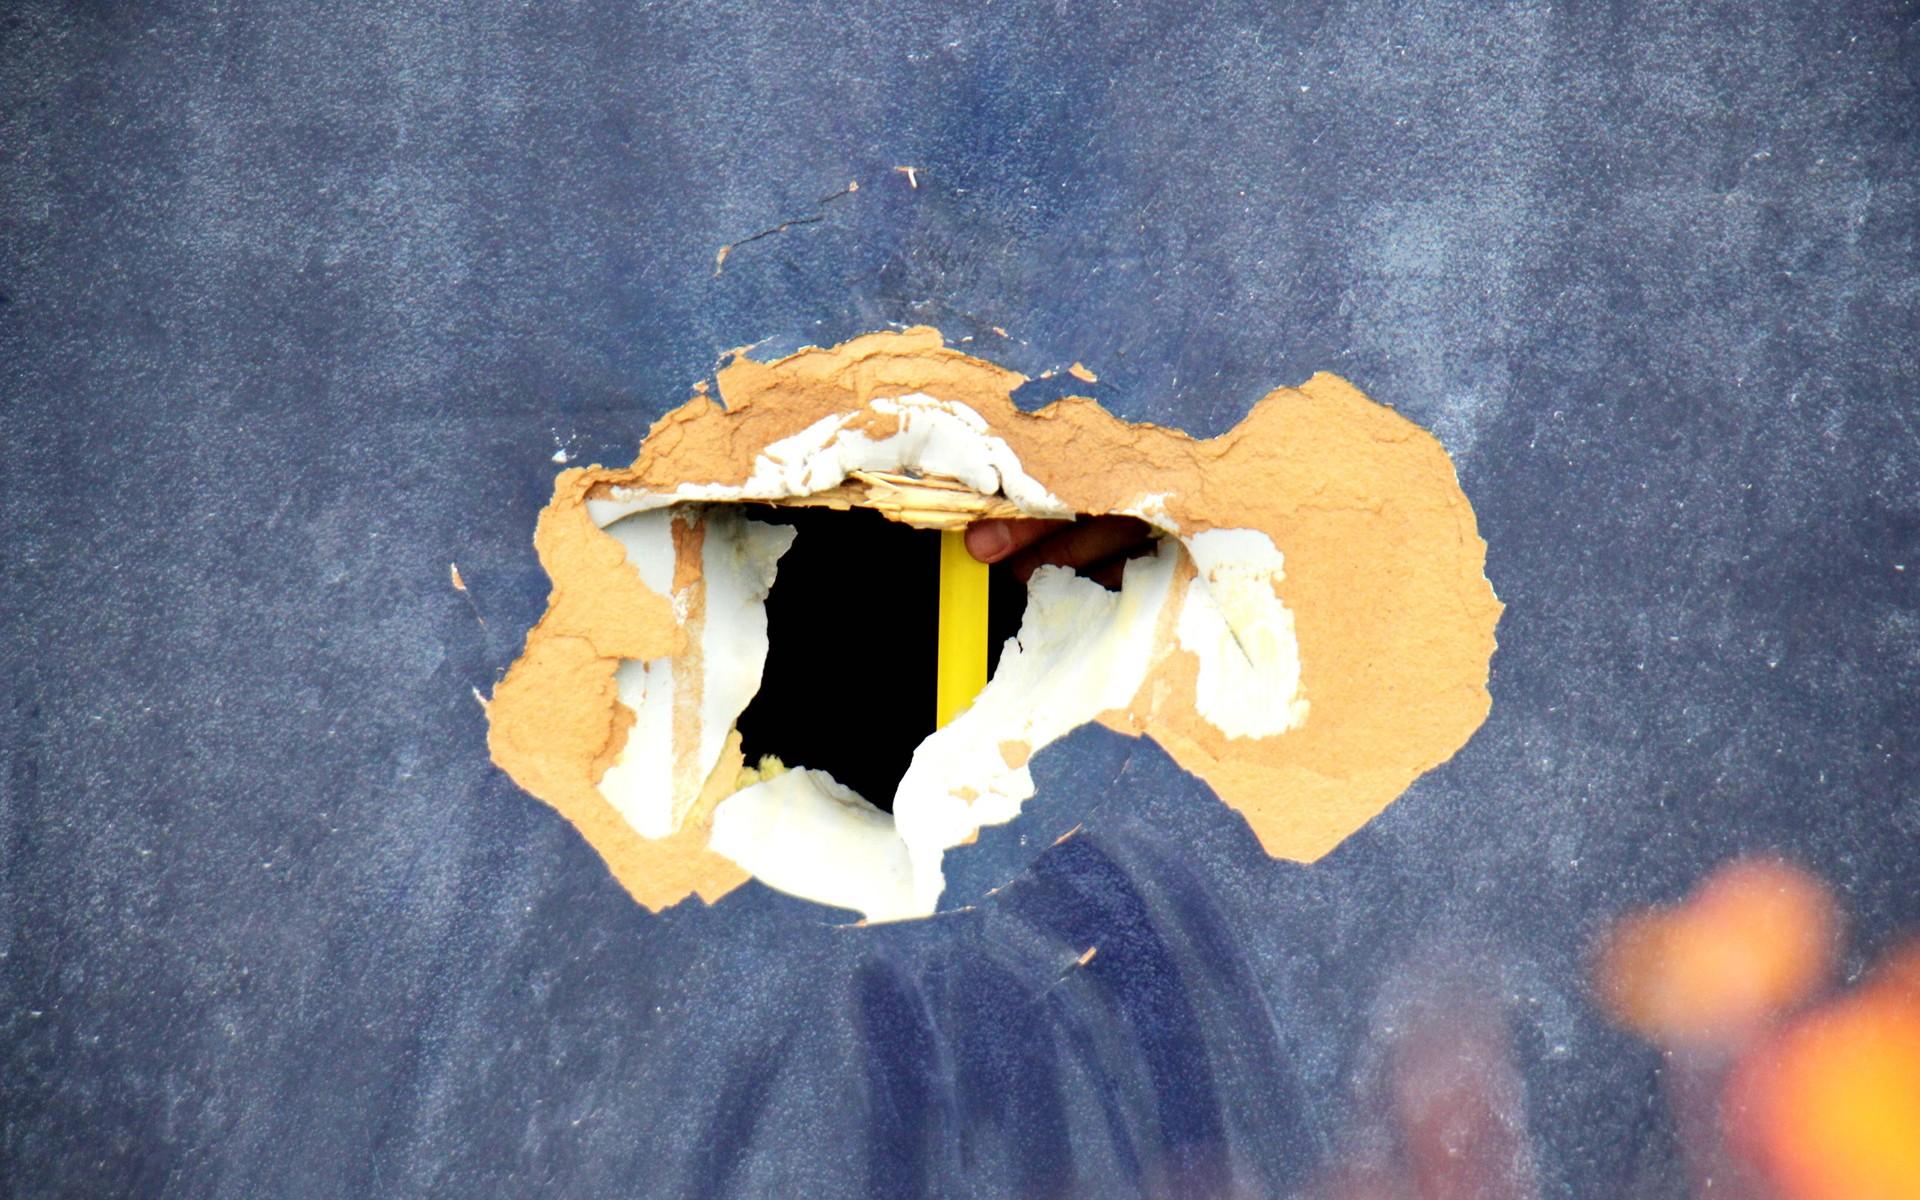 Från insidan mätte polisens tekniker hålet som uppkommit efter explosionen i Eklanda